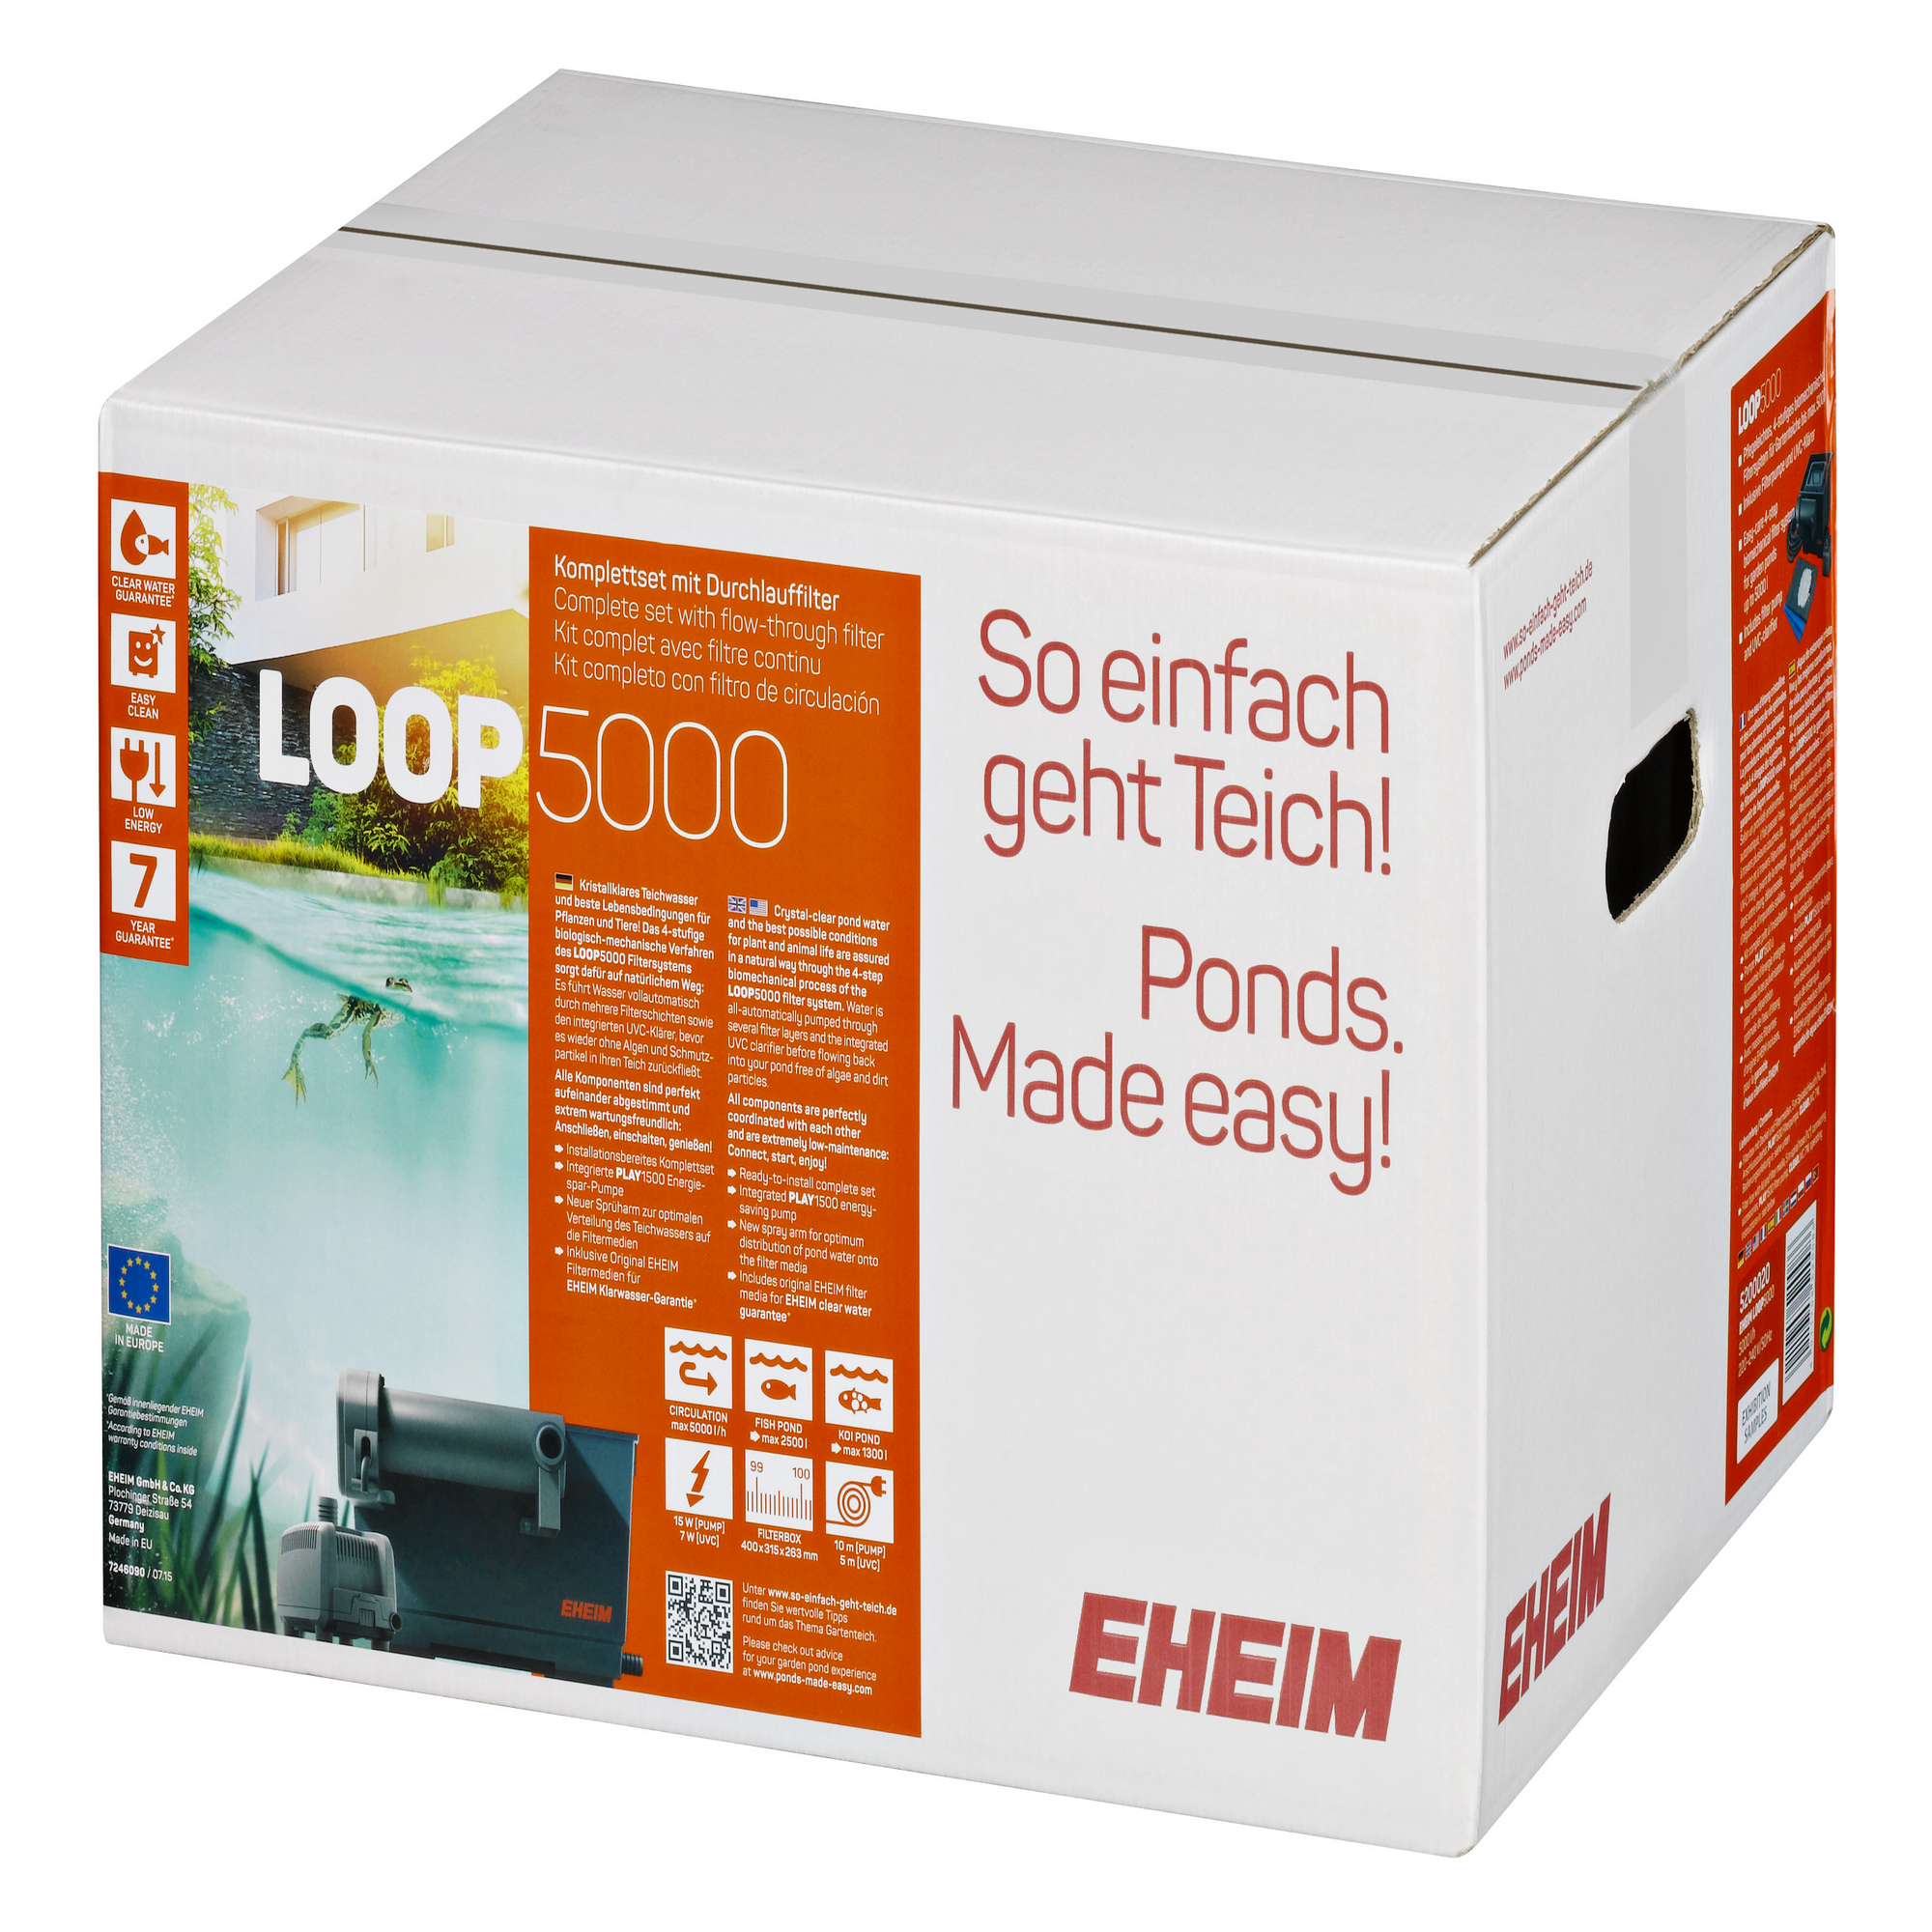 EHEIM LOOP 5000 Komplett-Set mit Durchlauffilter und UV-Klärer + product picture